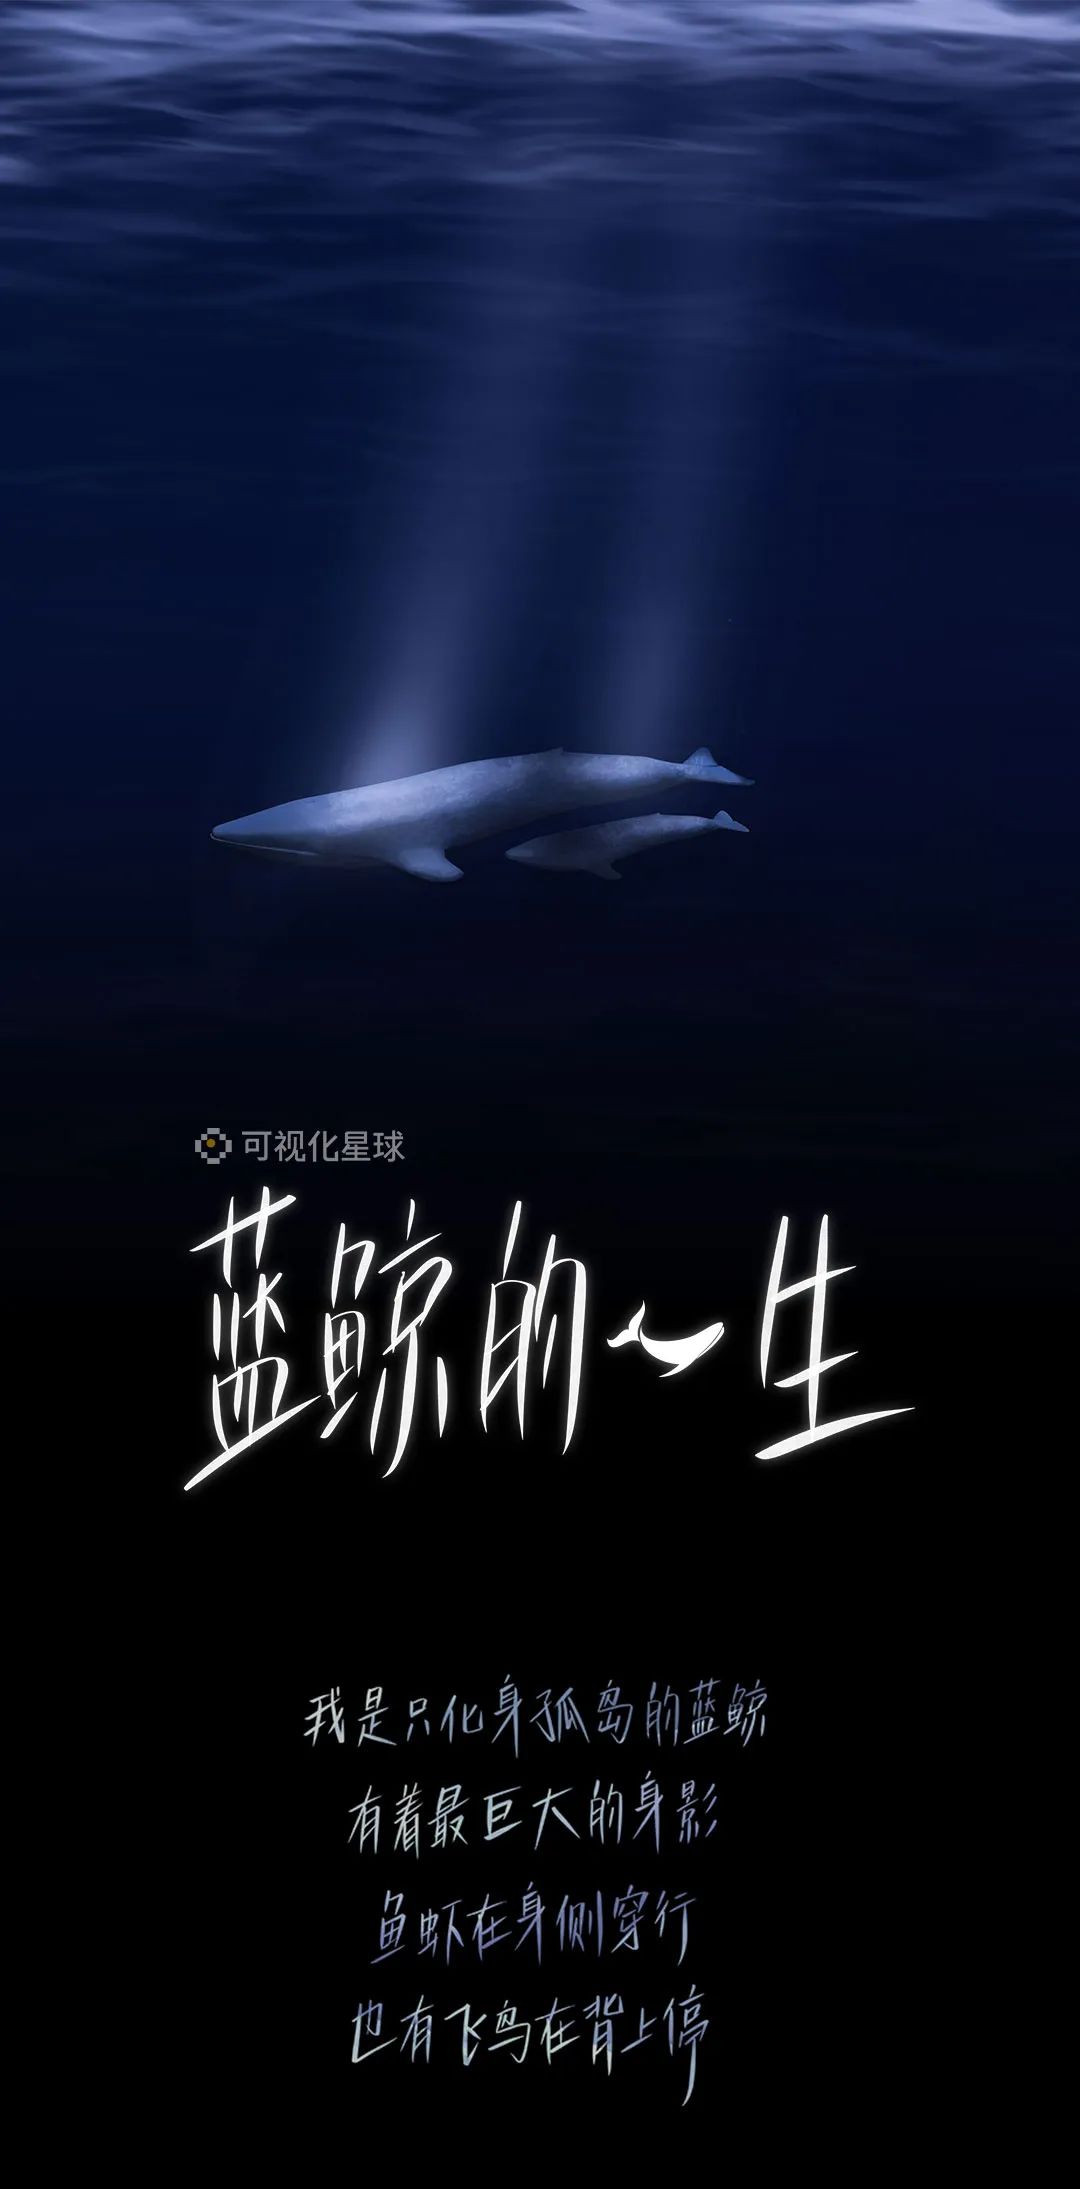 蓝鲸4:20死亡游戏从QQ转战微信群 入群需交费提供裸照_凤凰资讯